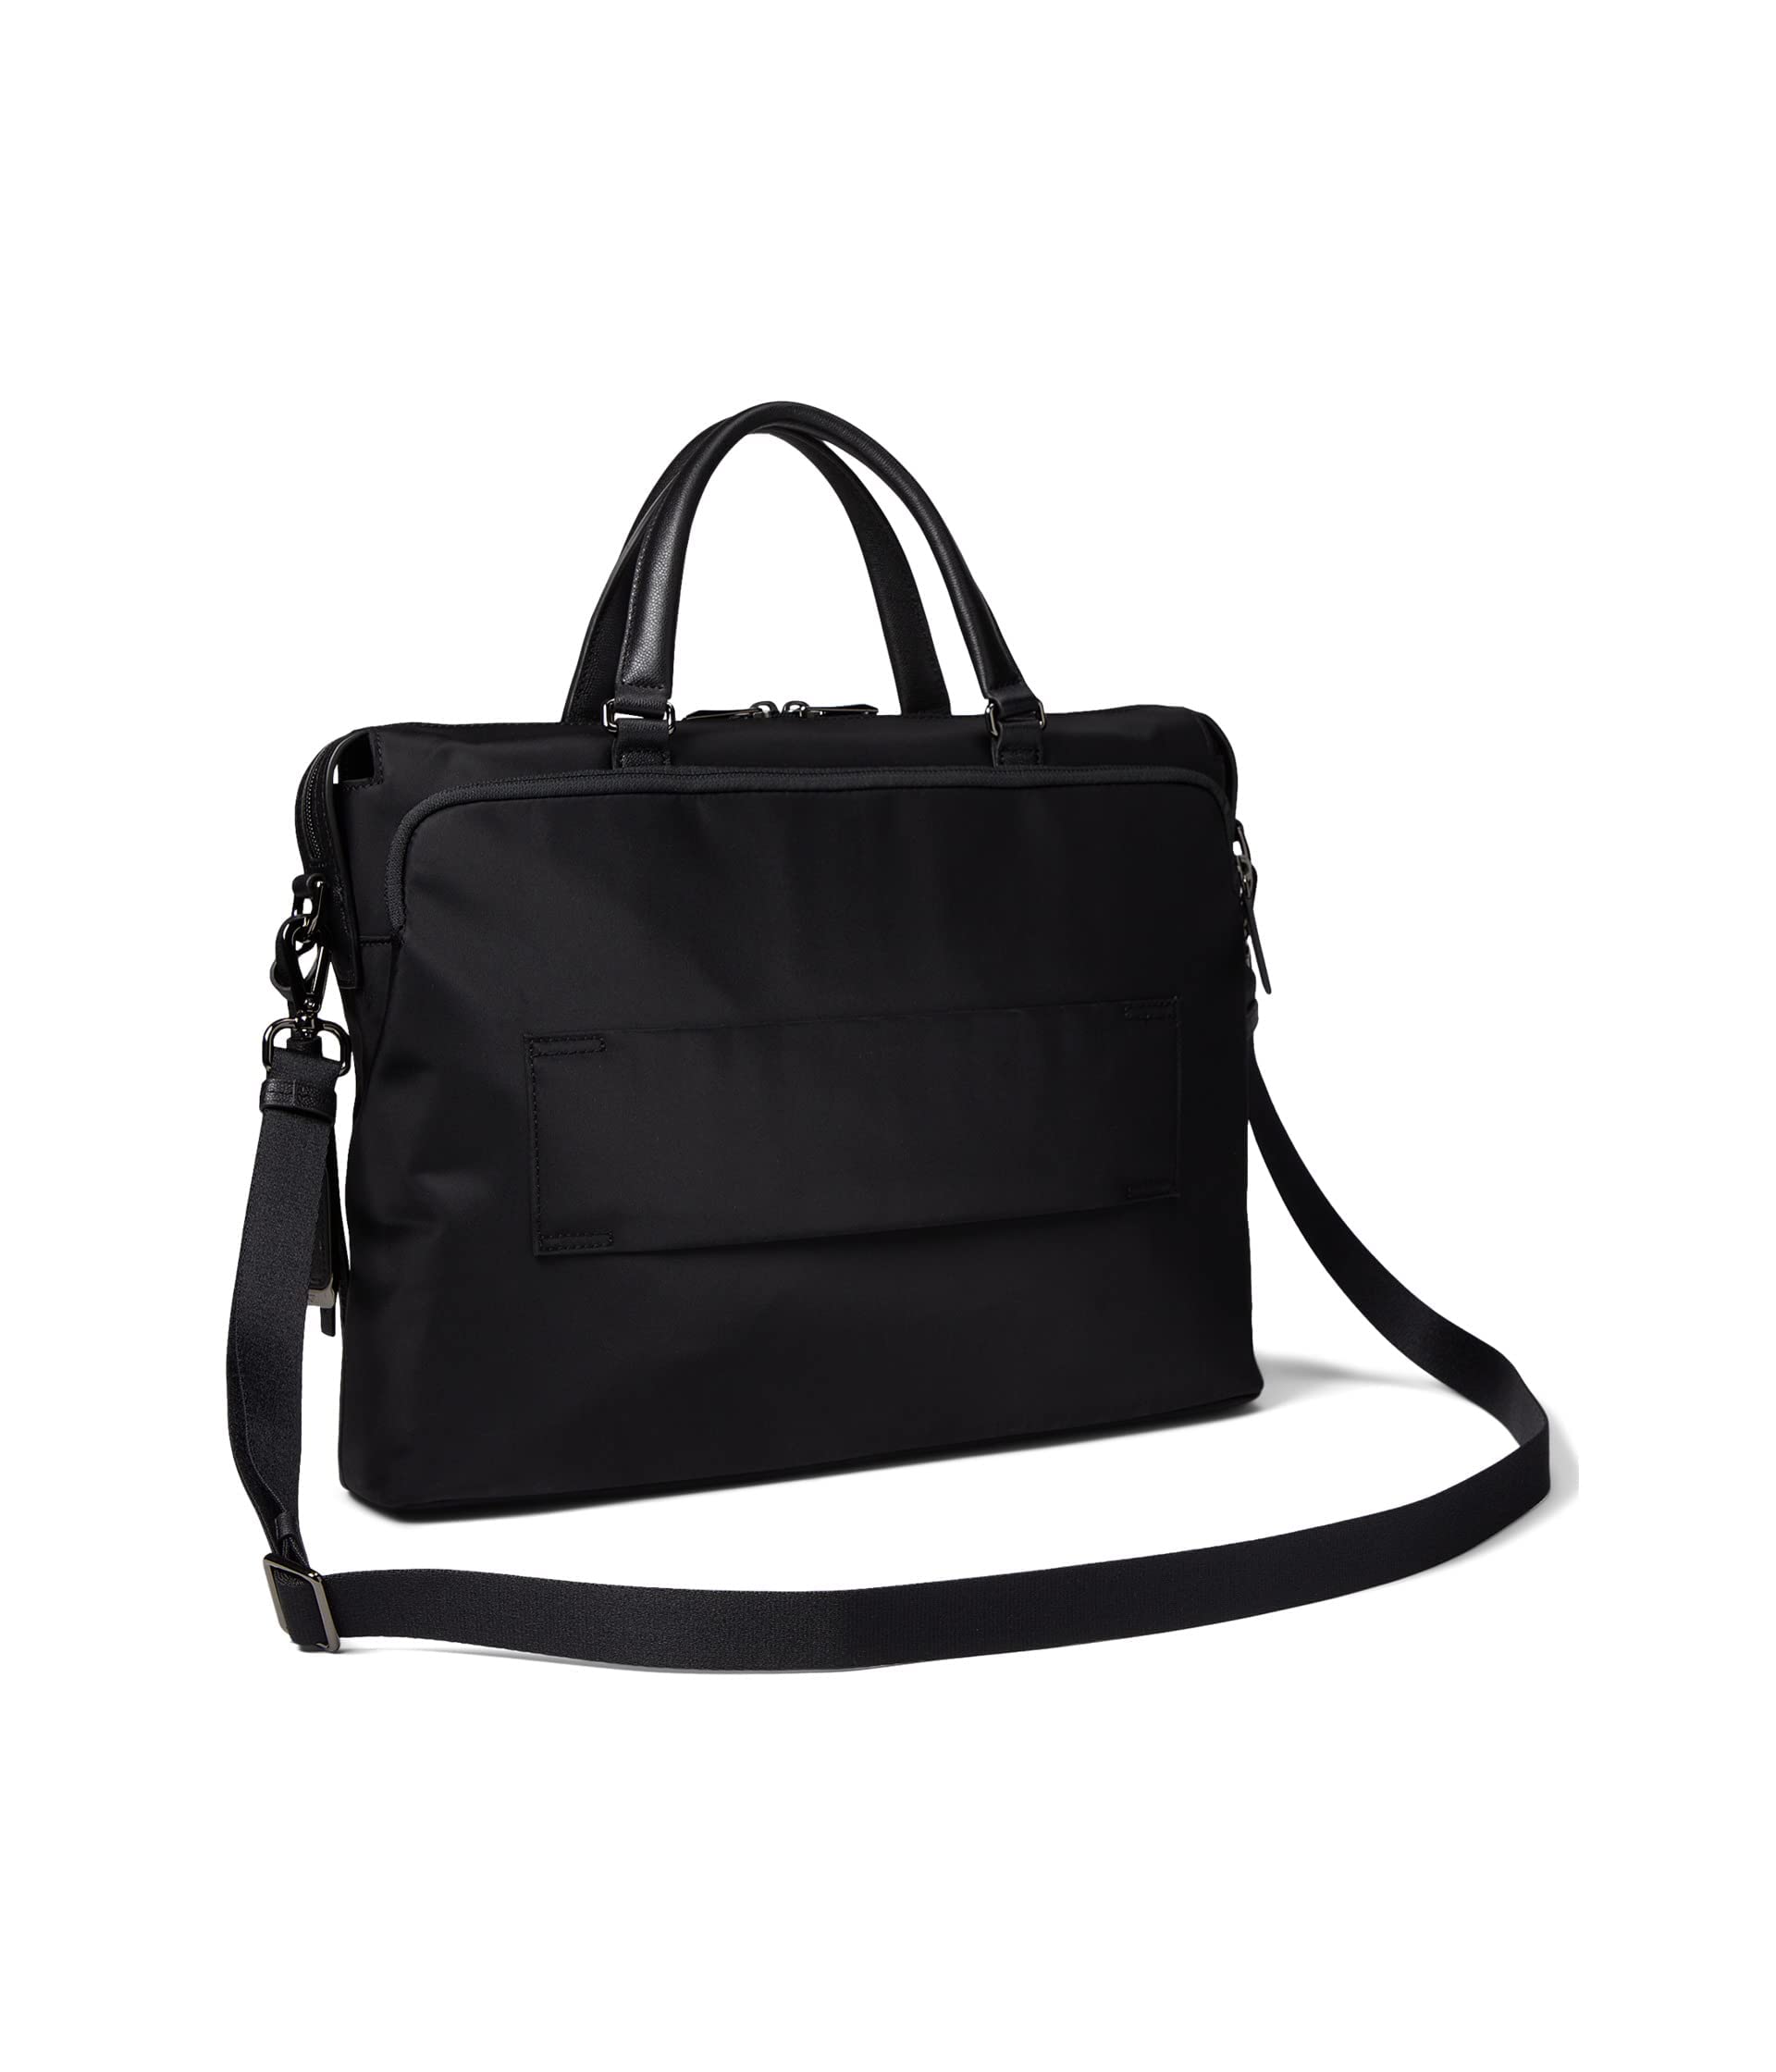 TUMI Voyageur Kendallville Brief - Briefcase Bag for Women & Men - Laptop Carrying Bag - Black & Gunmetal Hardware